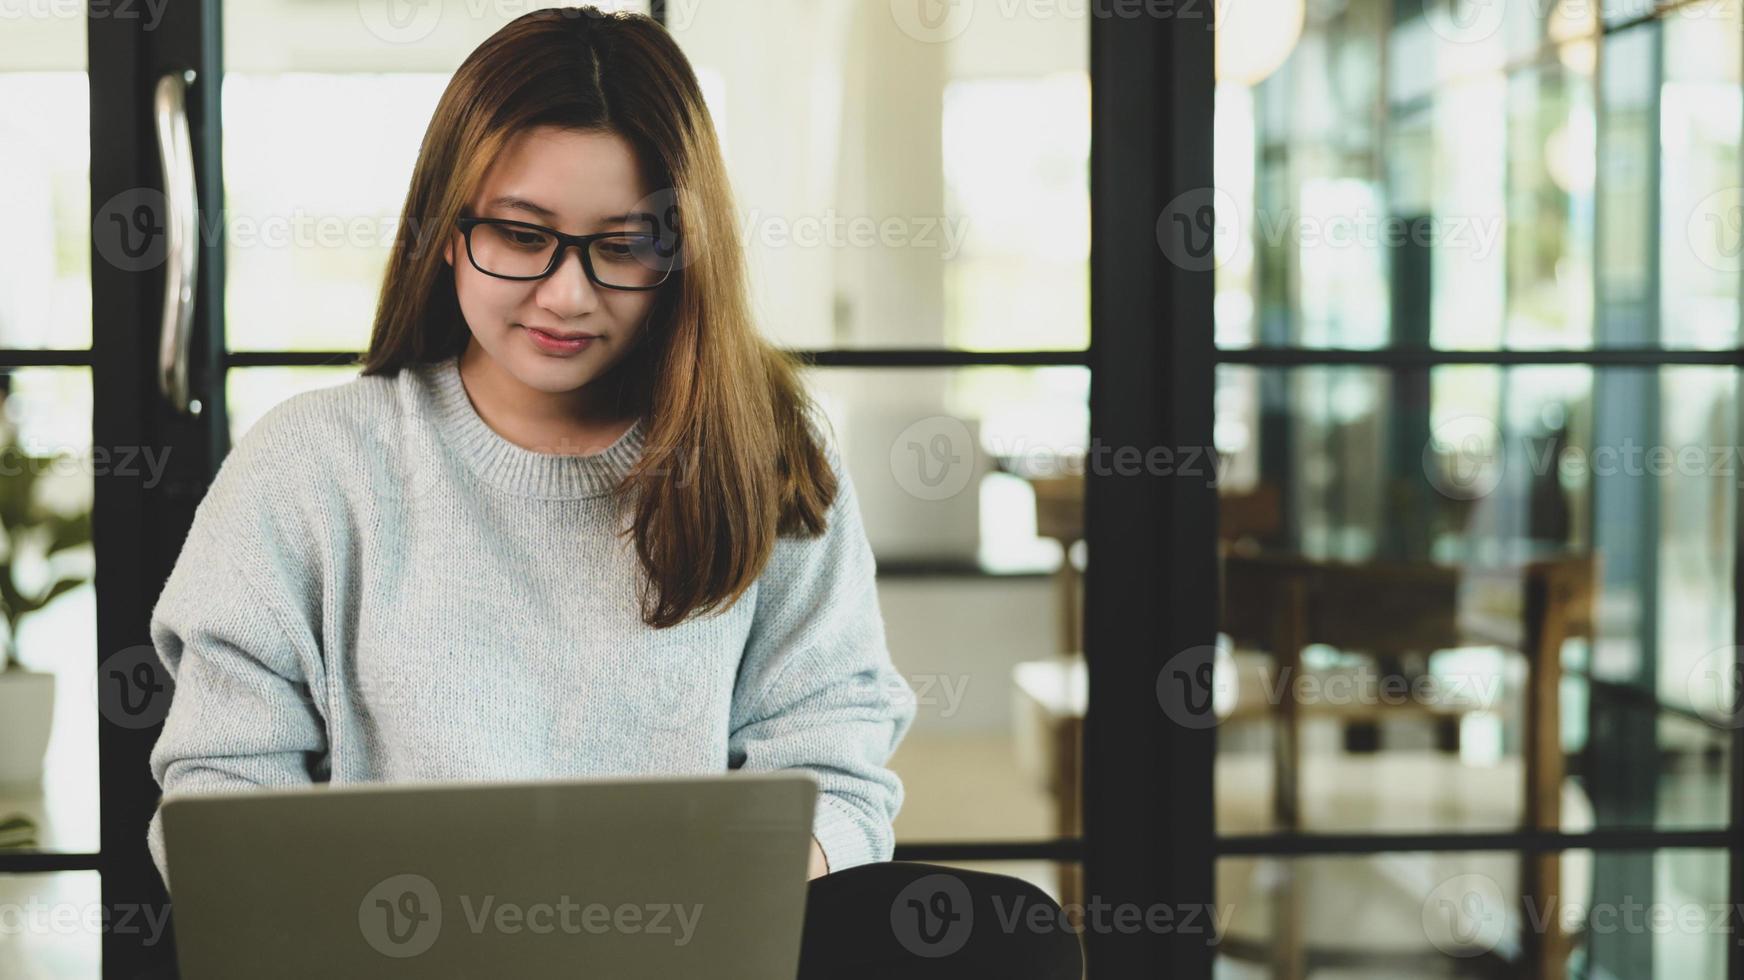 asiatische frau mit brille, die auf laptop schaut, sie arbeitet in einem café, frontansicht erschossen. foto